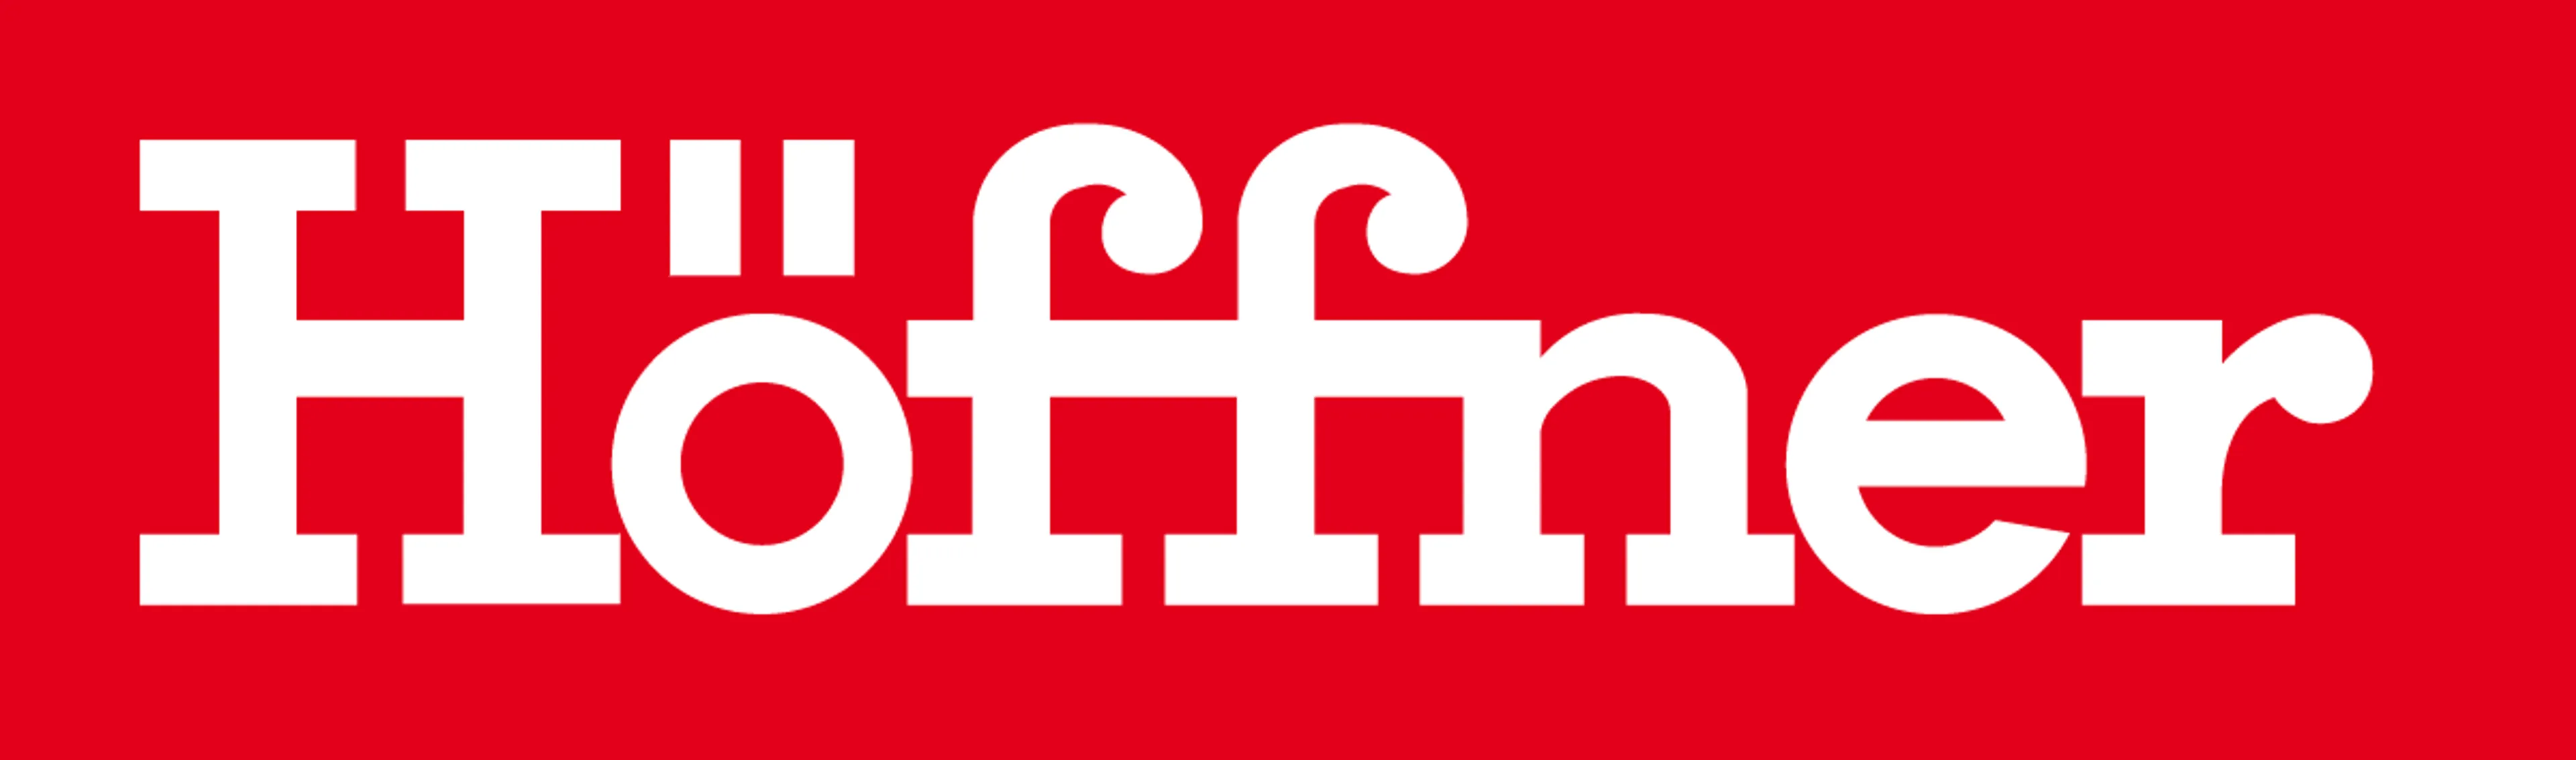 HÖFFNER logo